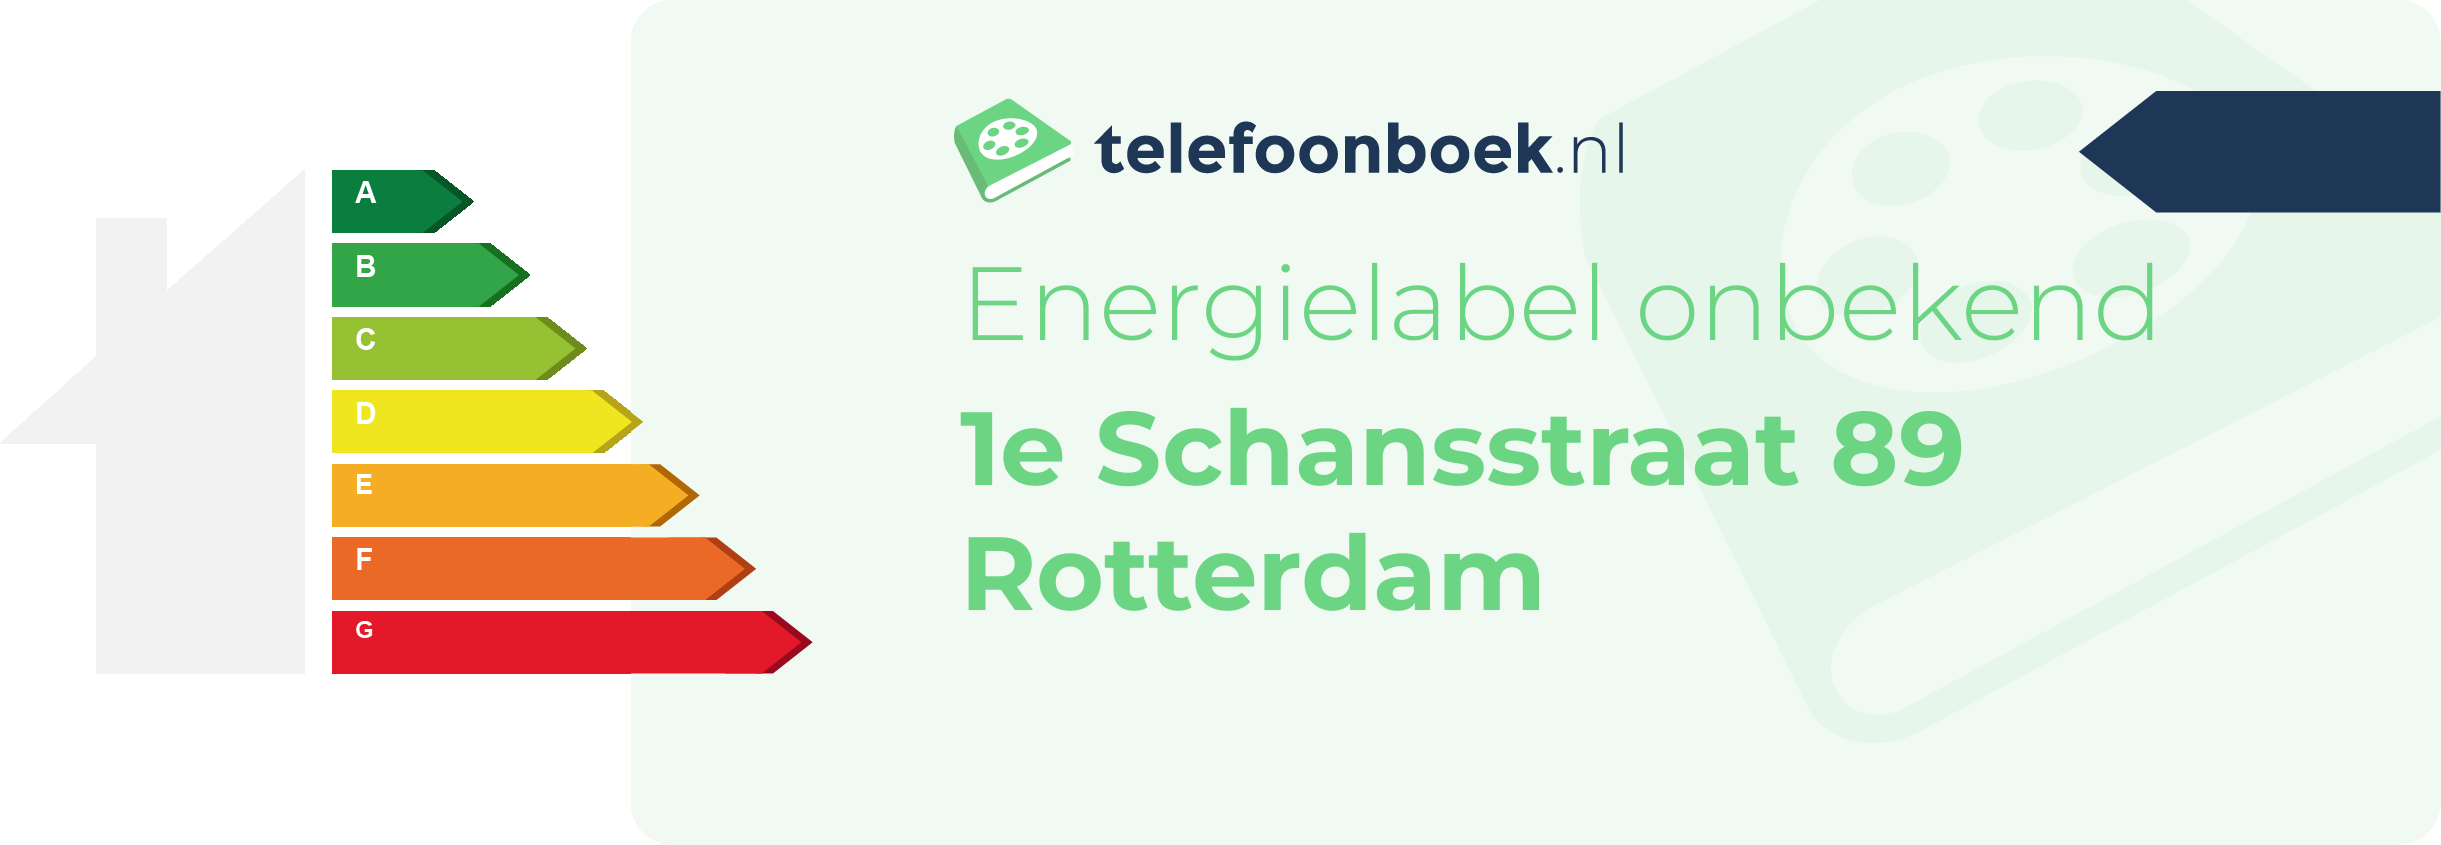 Energielabel 1e Schansstraat 89 Rotterdam